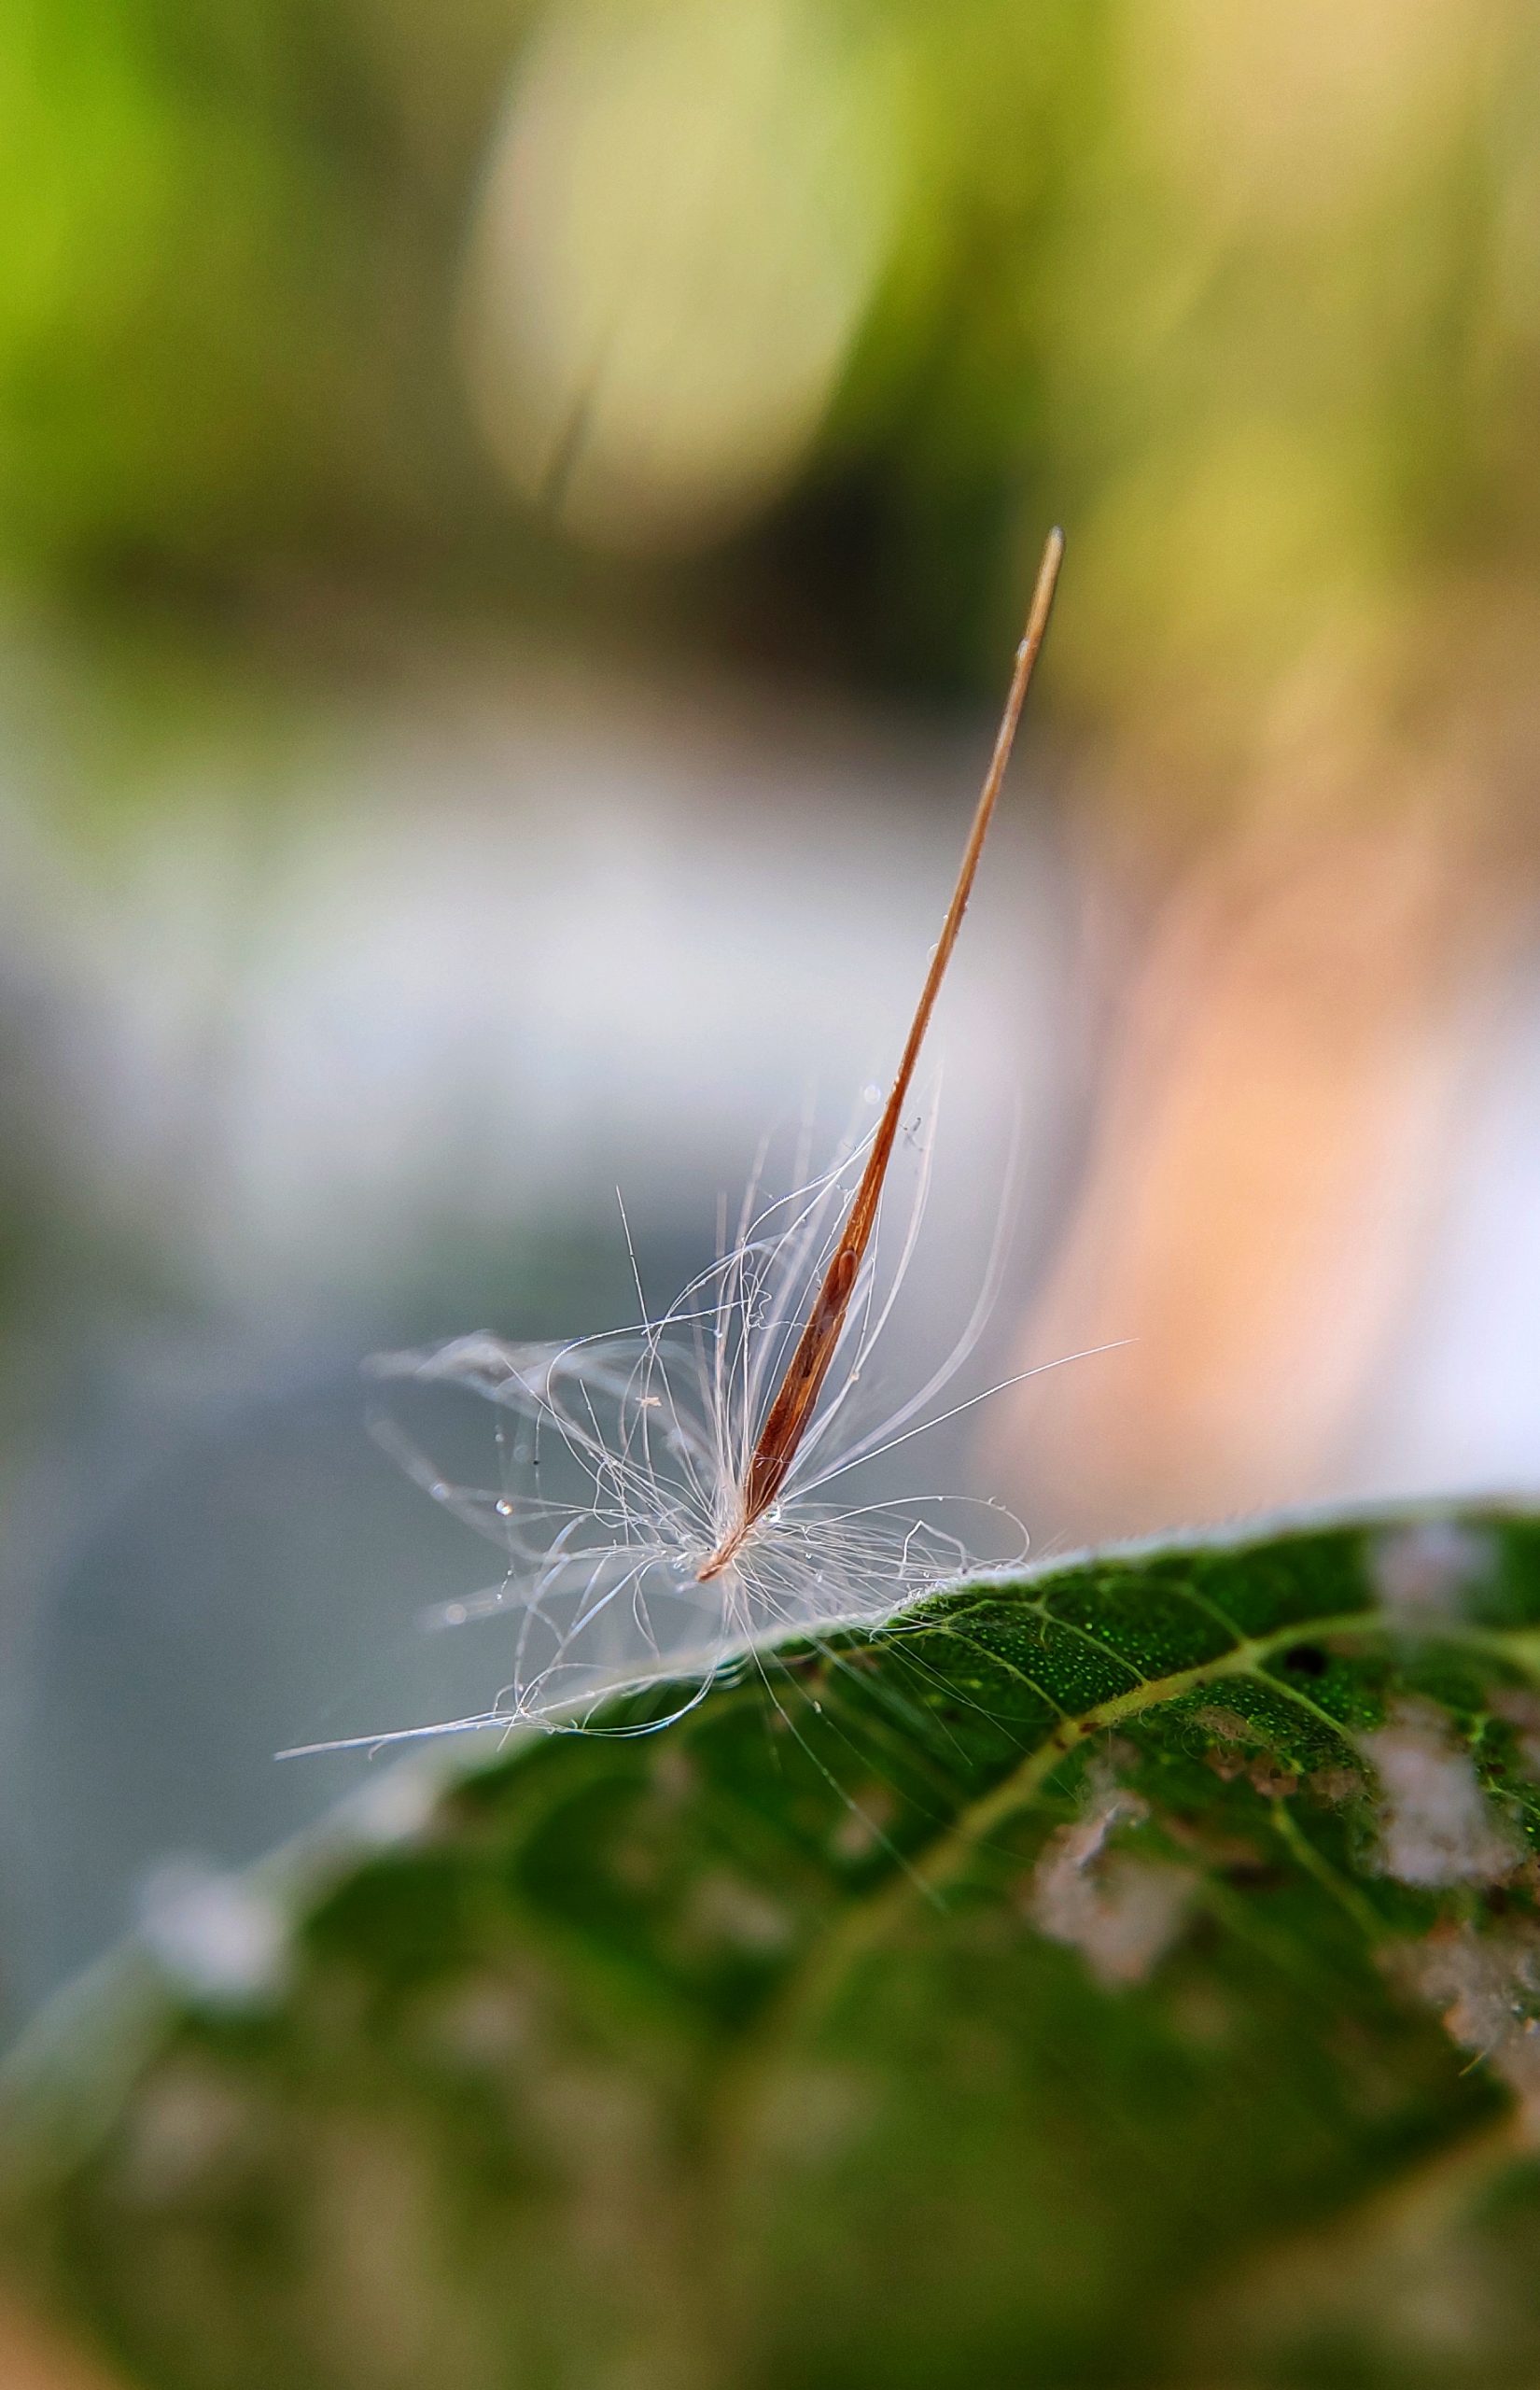 Mini Creature on plant leaf